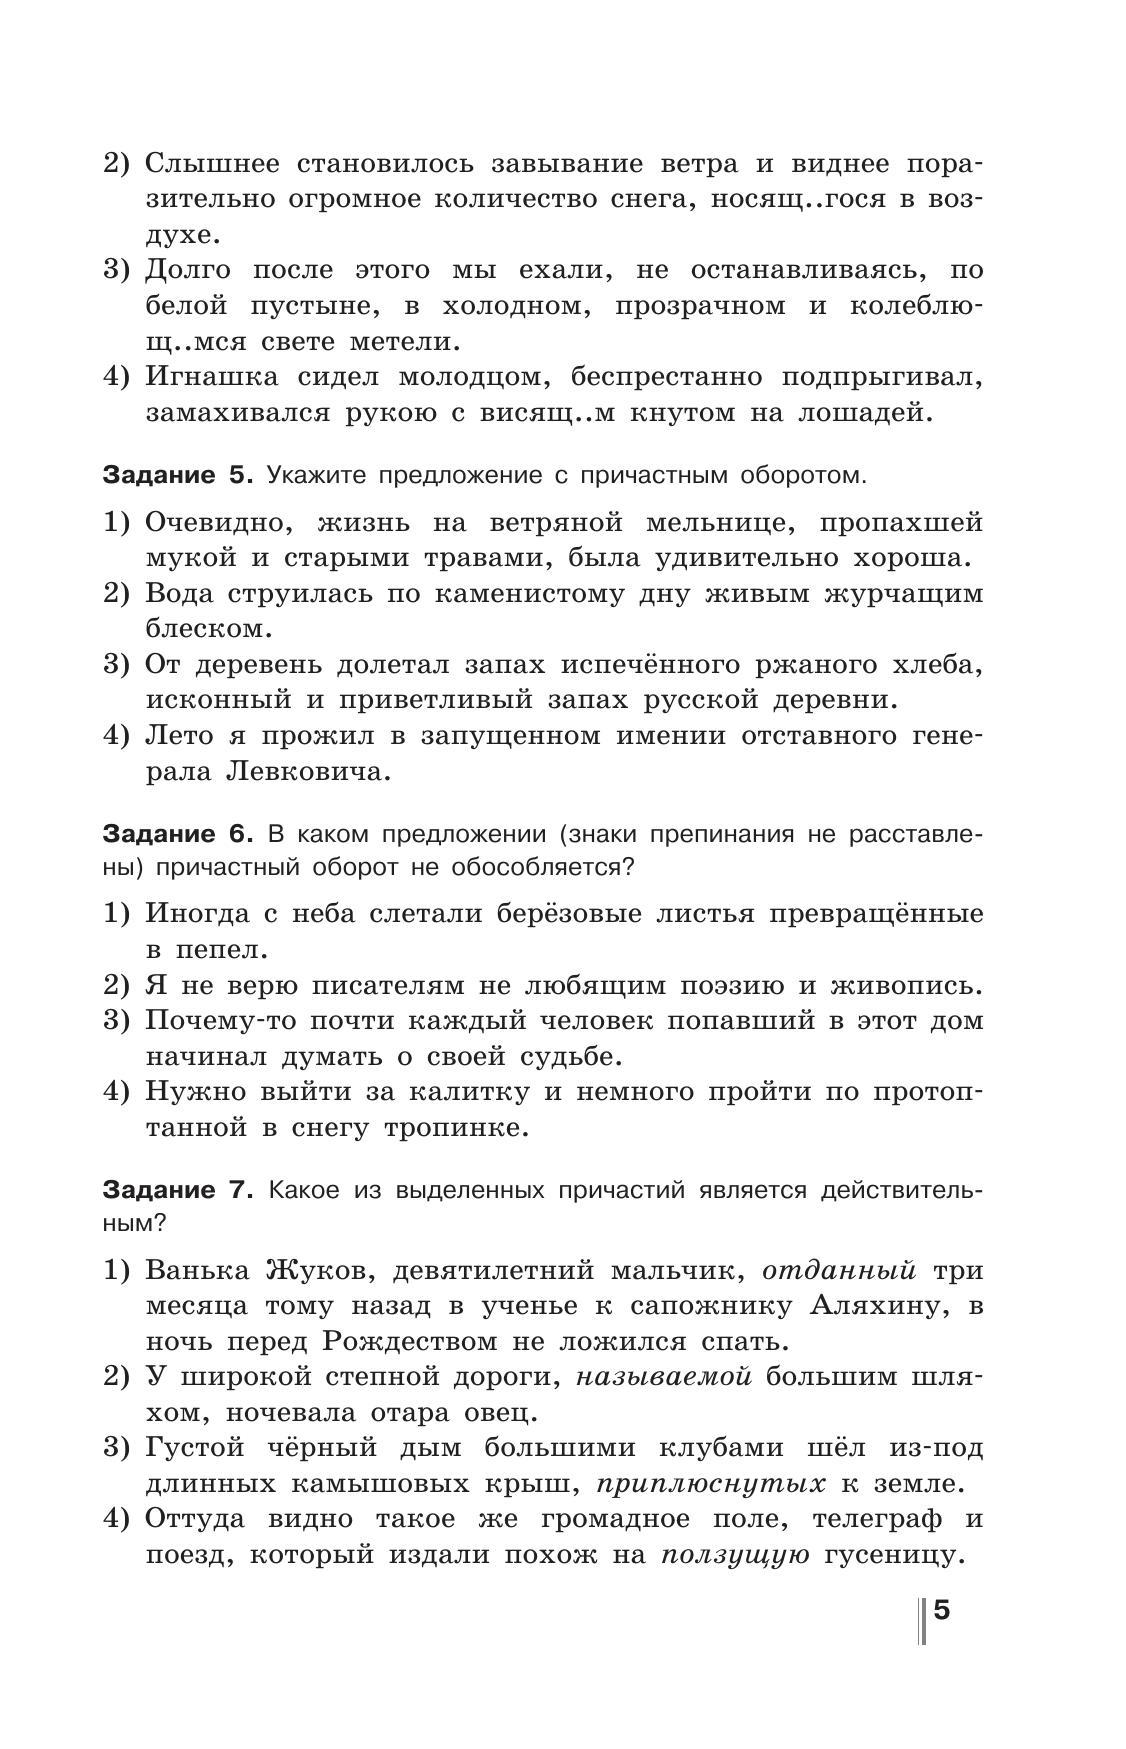 Русский язык. Готовимся к ГИА. Тесты, творческие работы, проекты. 7 класс 2